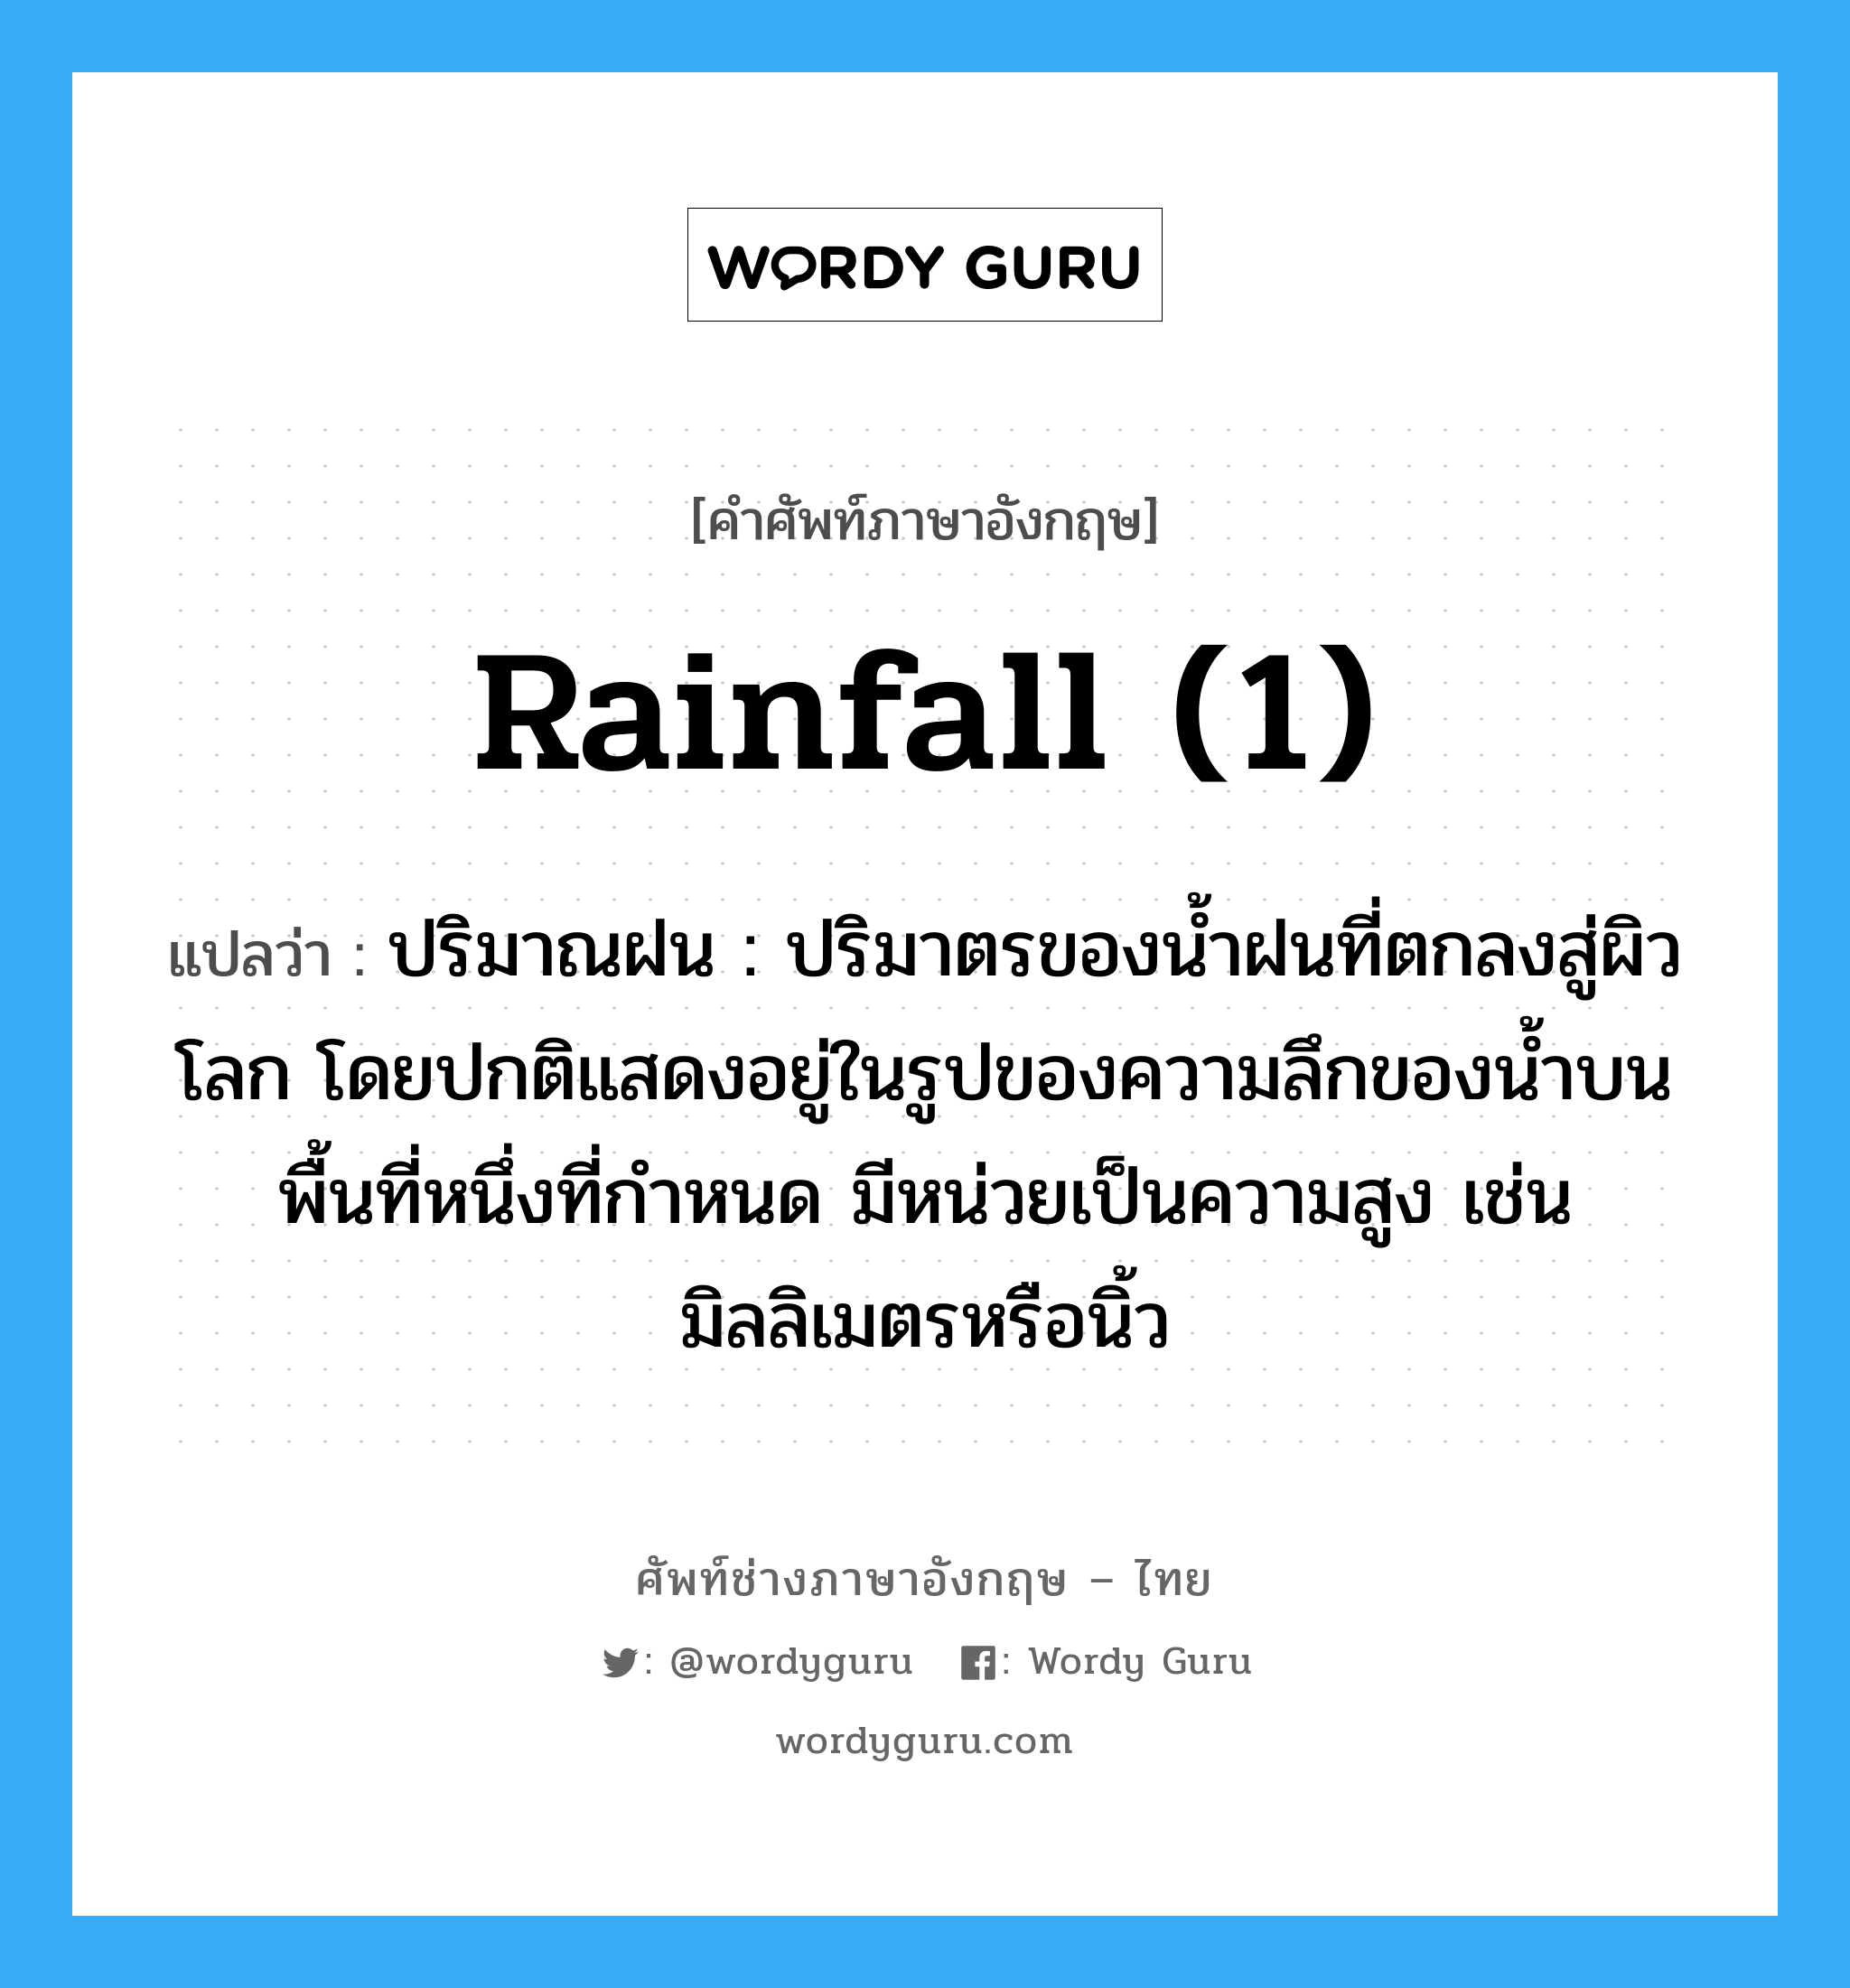 rainfall (1) แปลว่า?, คำศัพท์ช่างภาษาอังกฤษ - ไทย rainfall (1) คำศัพท์ภาษาอังกฤษ rainfall (1) แปลว่า ปริมาณฝน : ปริมาตรของน้ำฝนที่ตกลงสู่ผิวโลก โดยปกติแสดงอยู่ในรูปของความลึกของน้ำบนพื้นที่หนึ่งที่กำหนด มีหน่วยเป็นความสูง เช่น มิลลิเมตรหรือนิ้ว